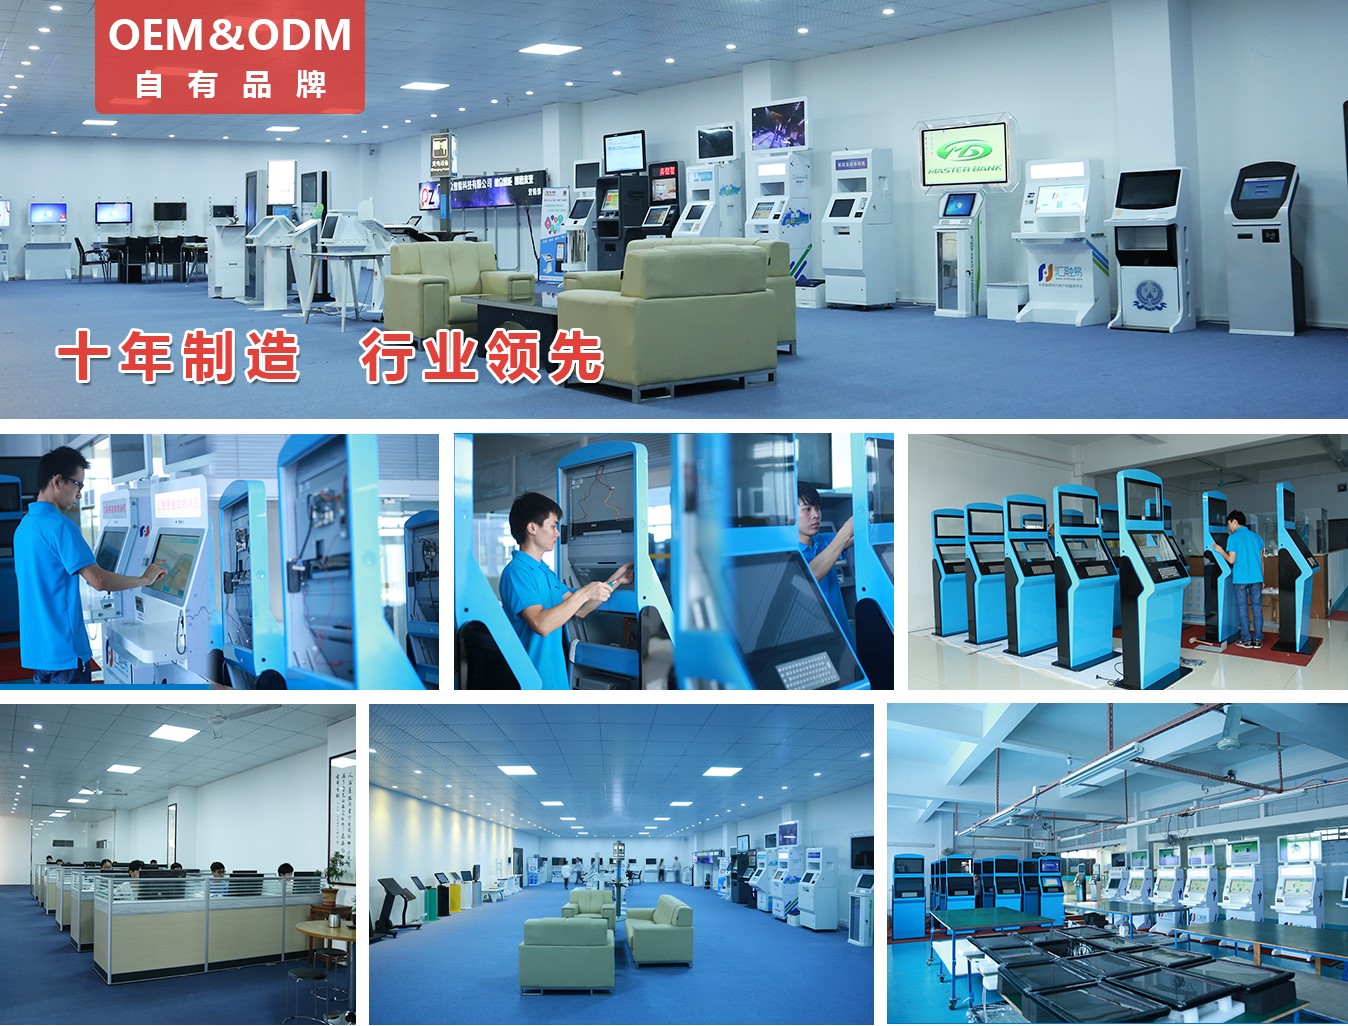 26寸壁挂竖屏广告机PZ-26BE--广州磐众智能科技有限公司